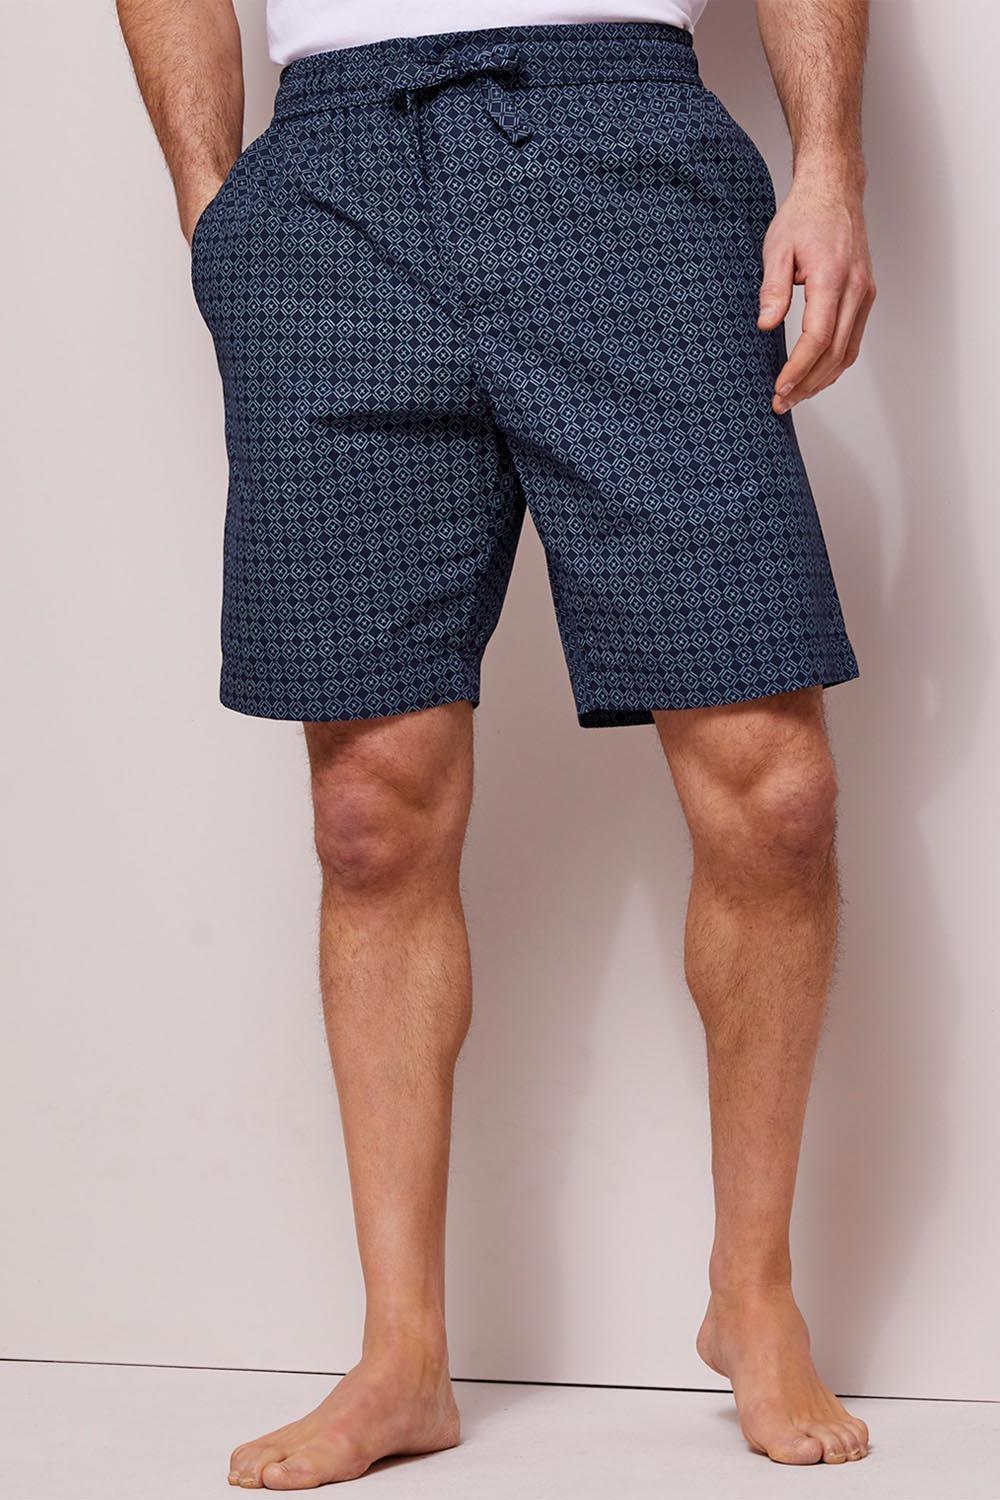 Woven Loungewear Shorts 9" (23cm) inside leg